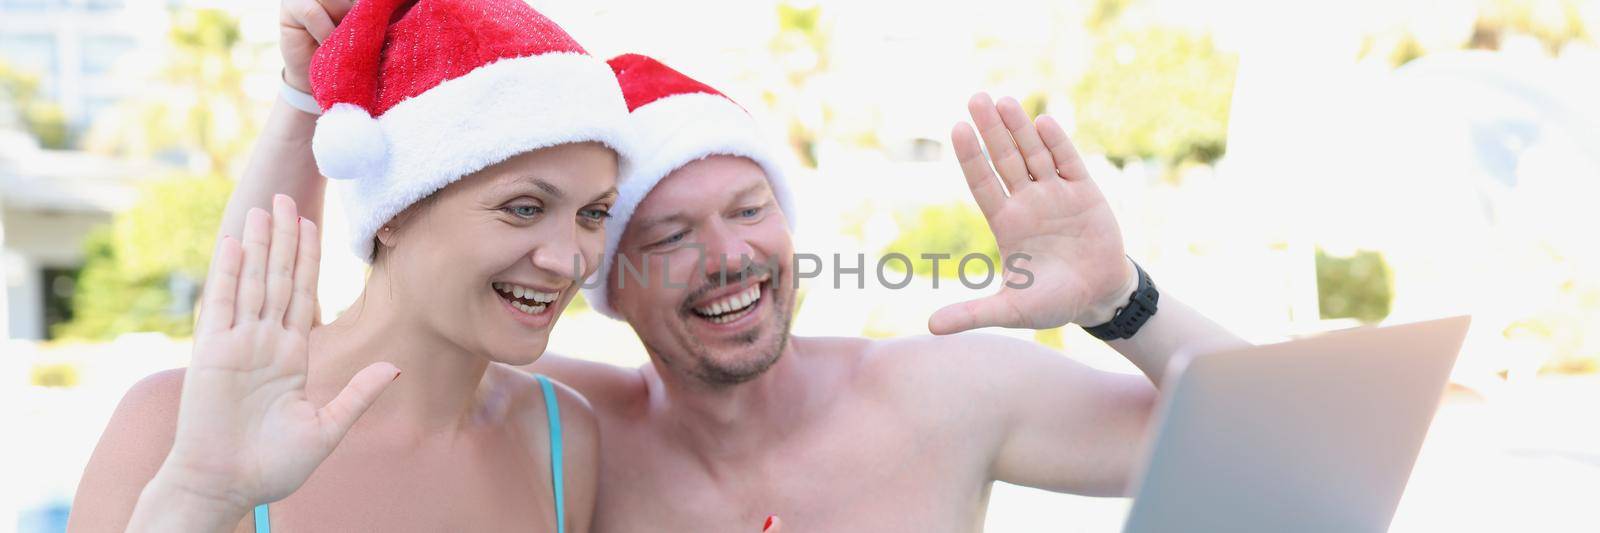 Wear festive santa claus hats by kuprevich